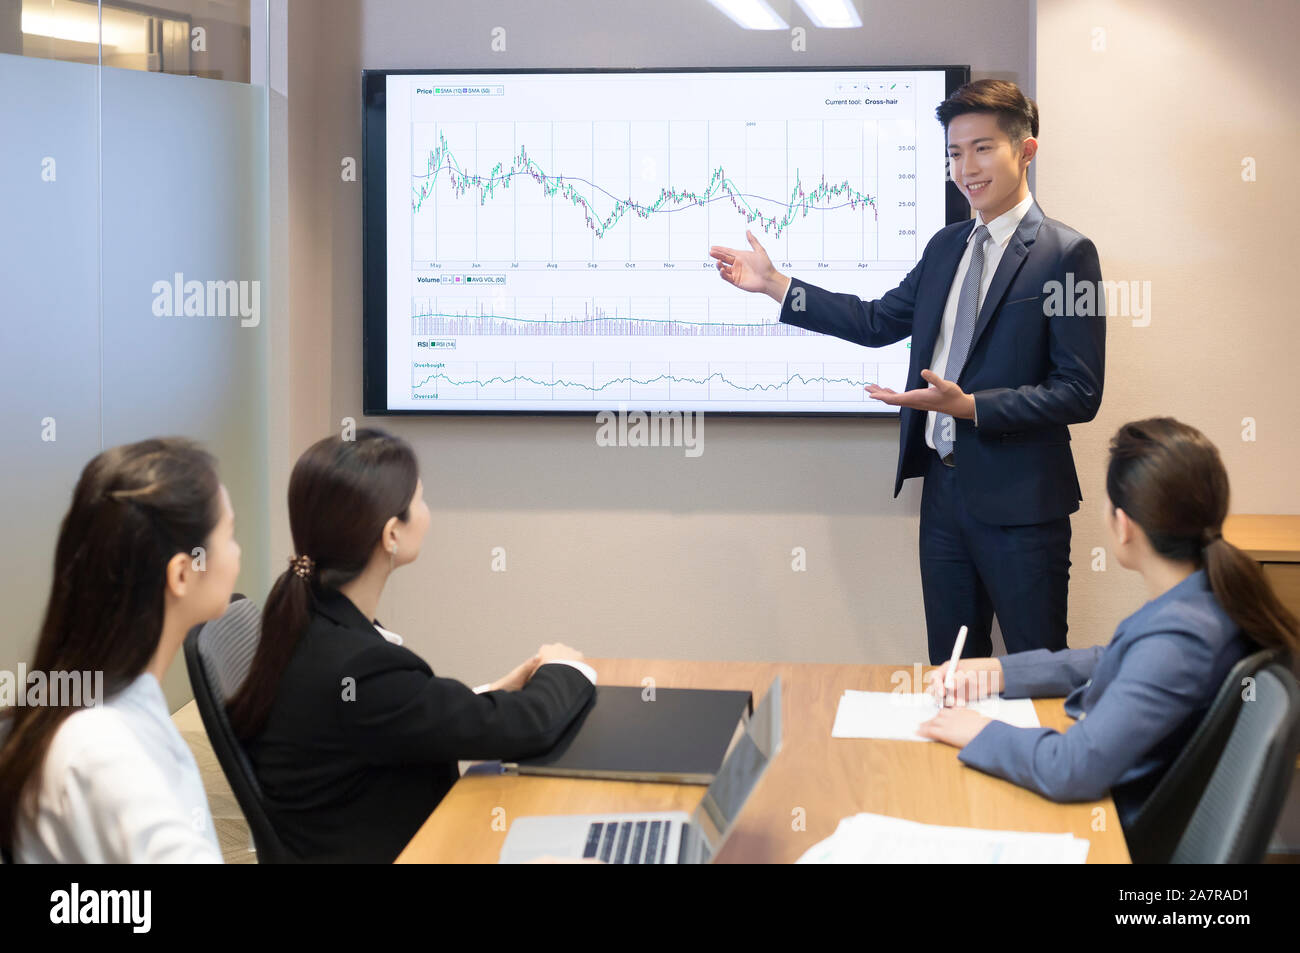 Jeune homme d'affaires souriant en costume donnant une présentation dans une salle de conseil avec un tableau sur un écran derrière lui et avec trois autres hommes d'affaires Banque D'Images